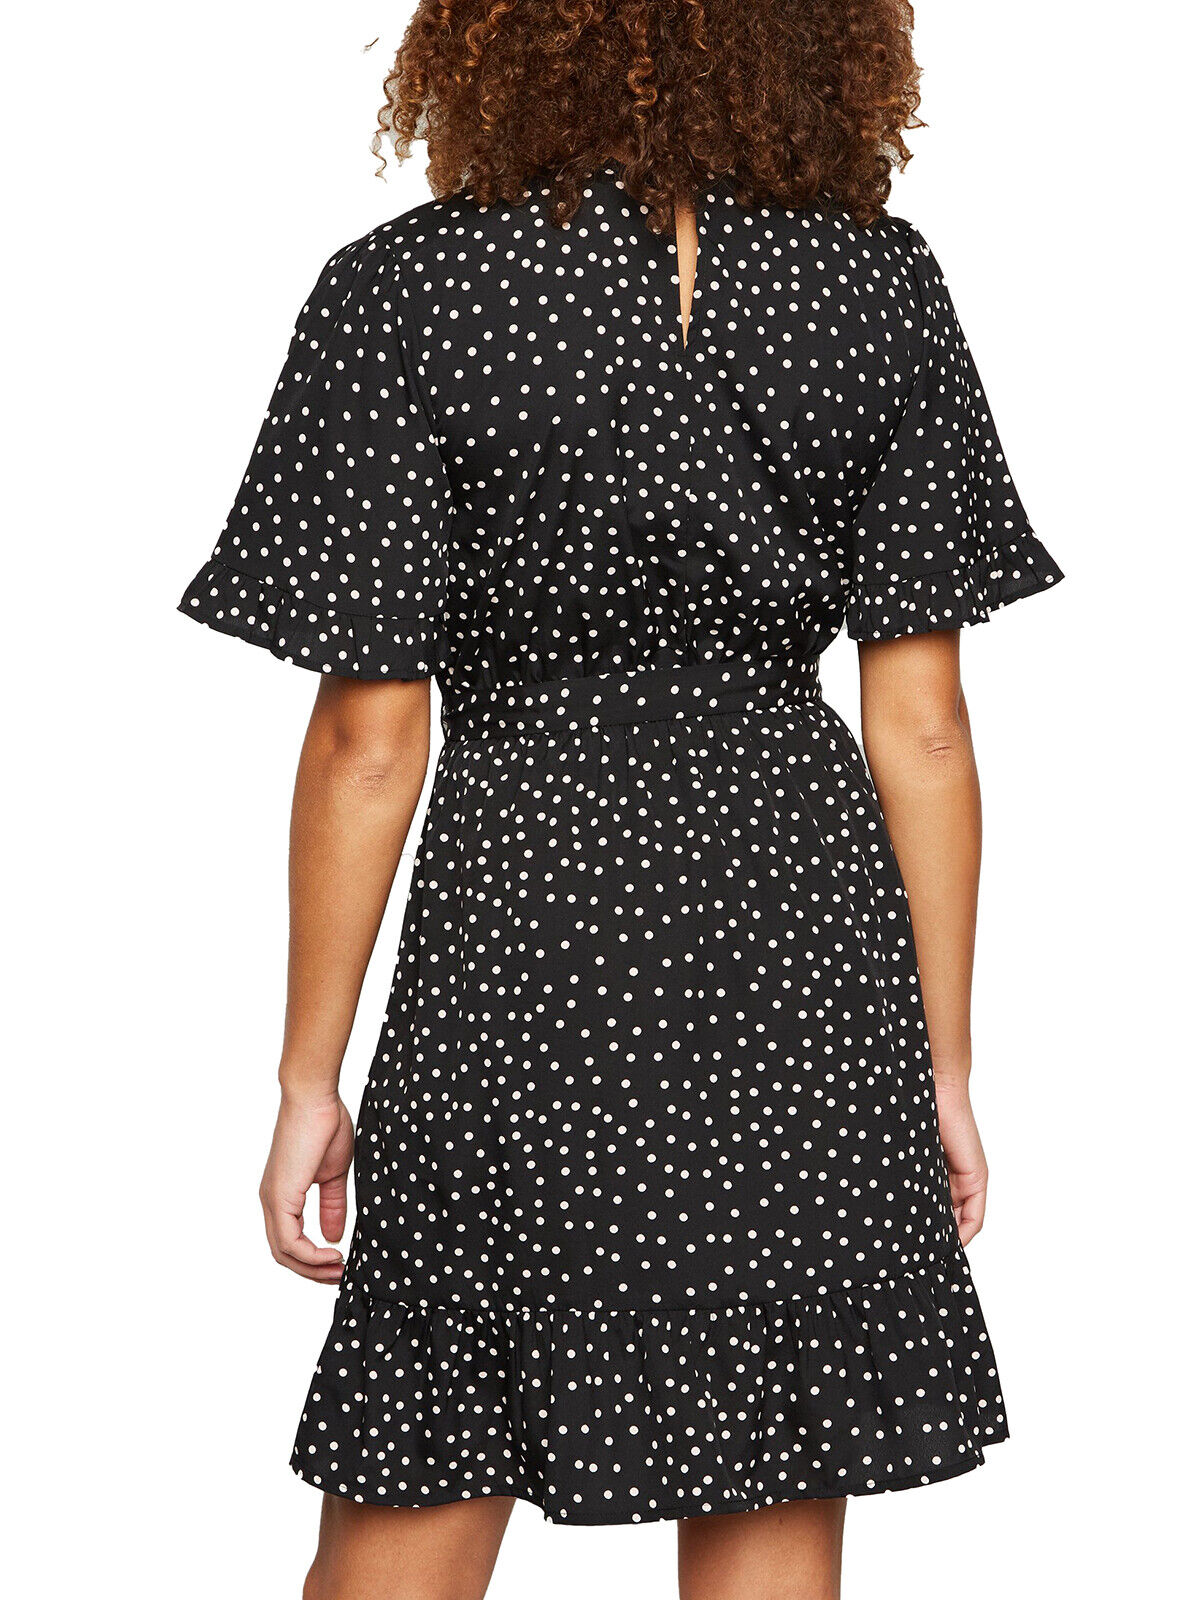 EX New Look Black Polka Dot Frill Trim Dress in Sizes 10, 12, 14, 16, 18